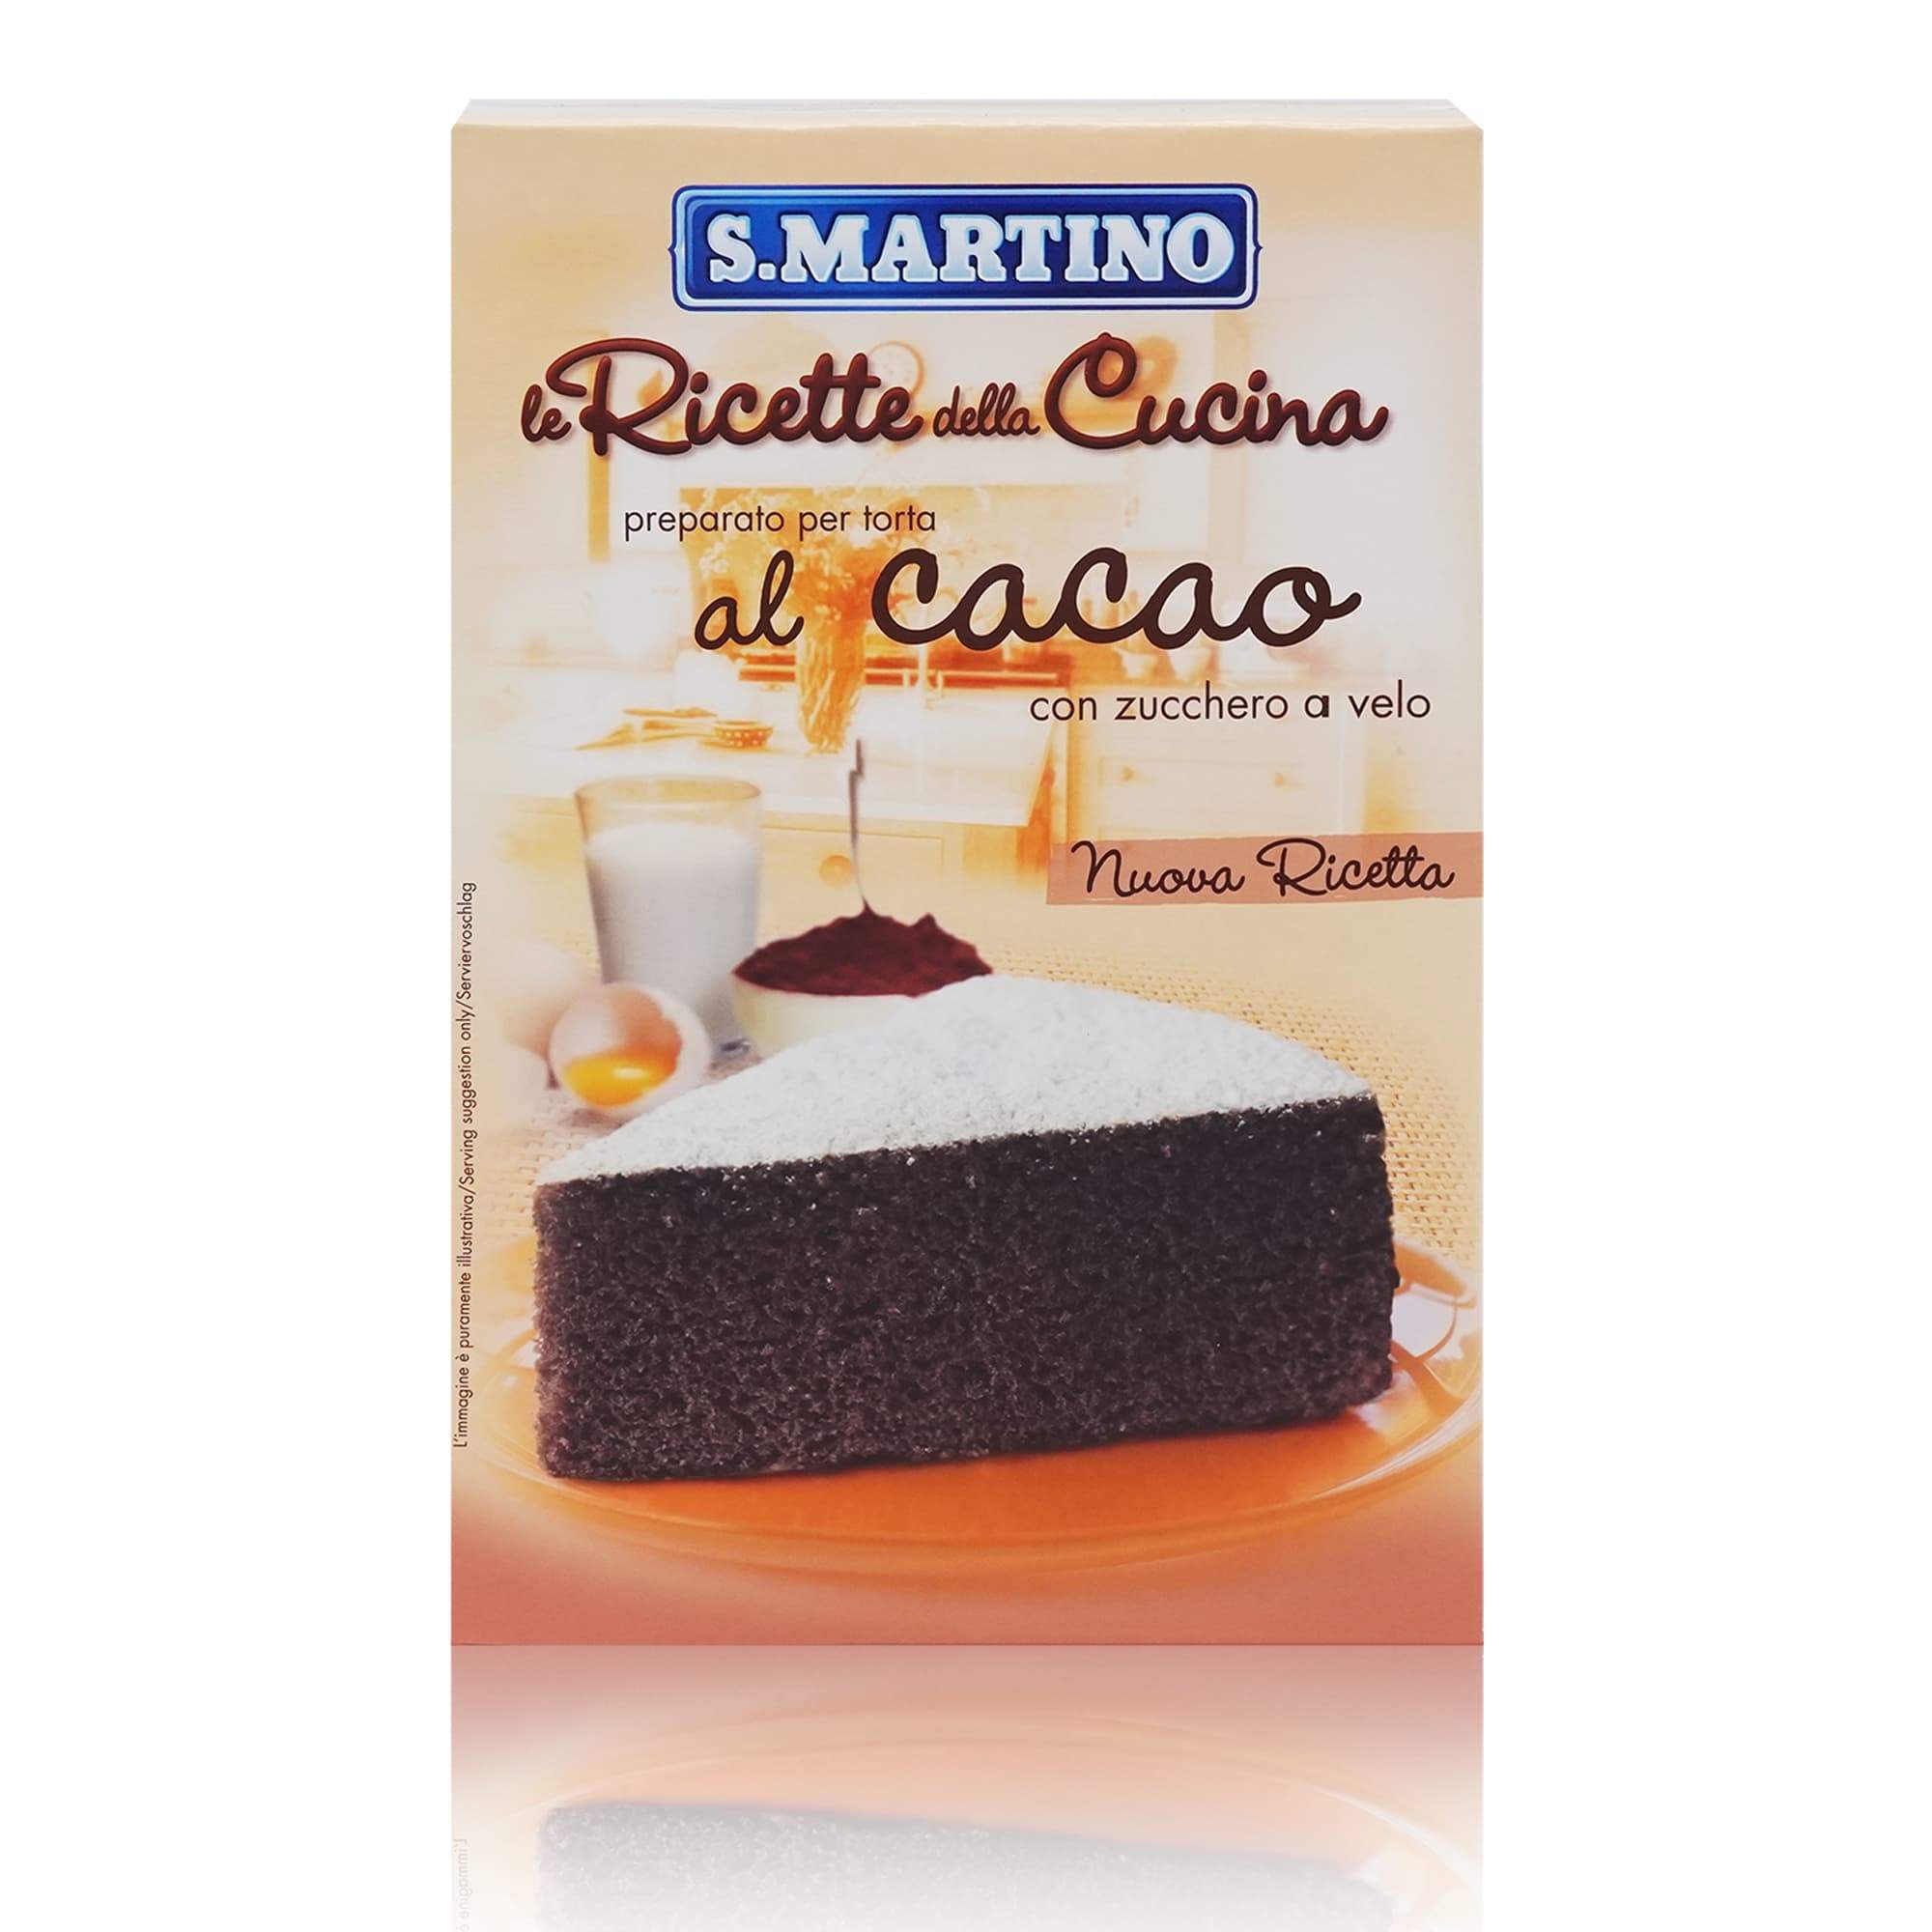 S.MARTINO Preparato per Torta al cacao – Backmischung für Schokotorte - 0,460kg - italienisch-einkaufen.de